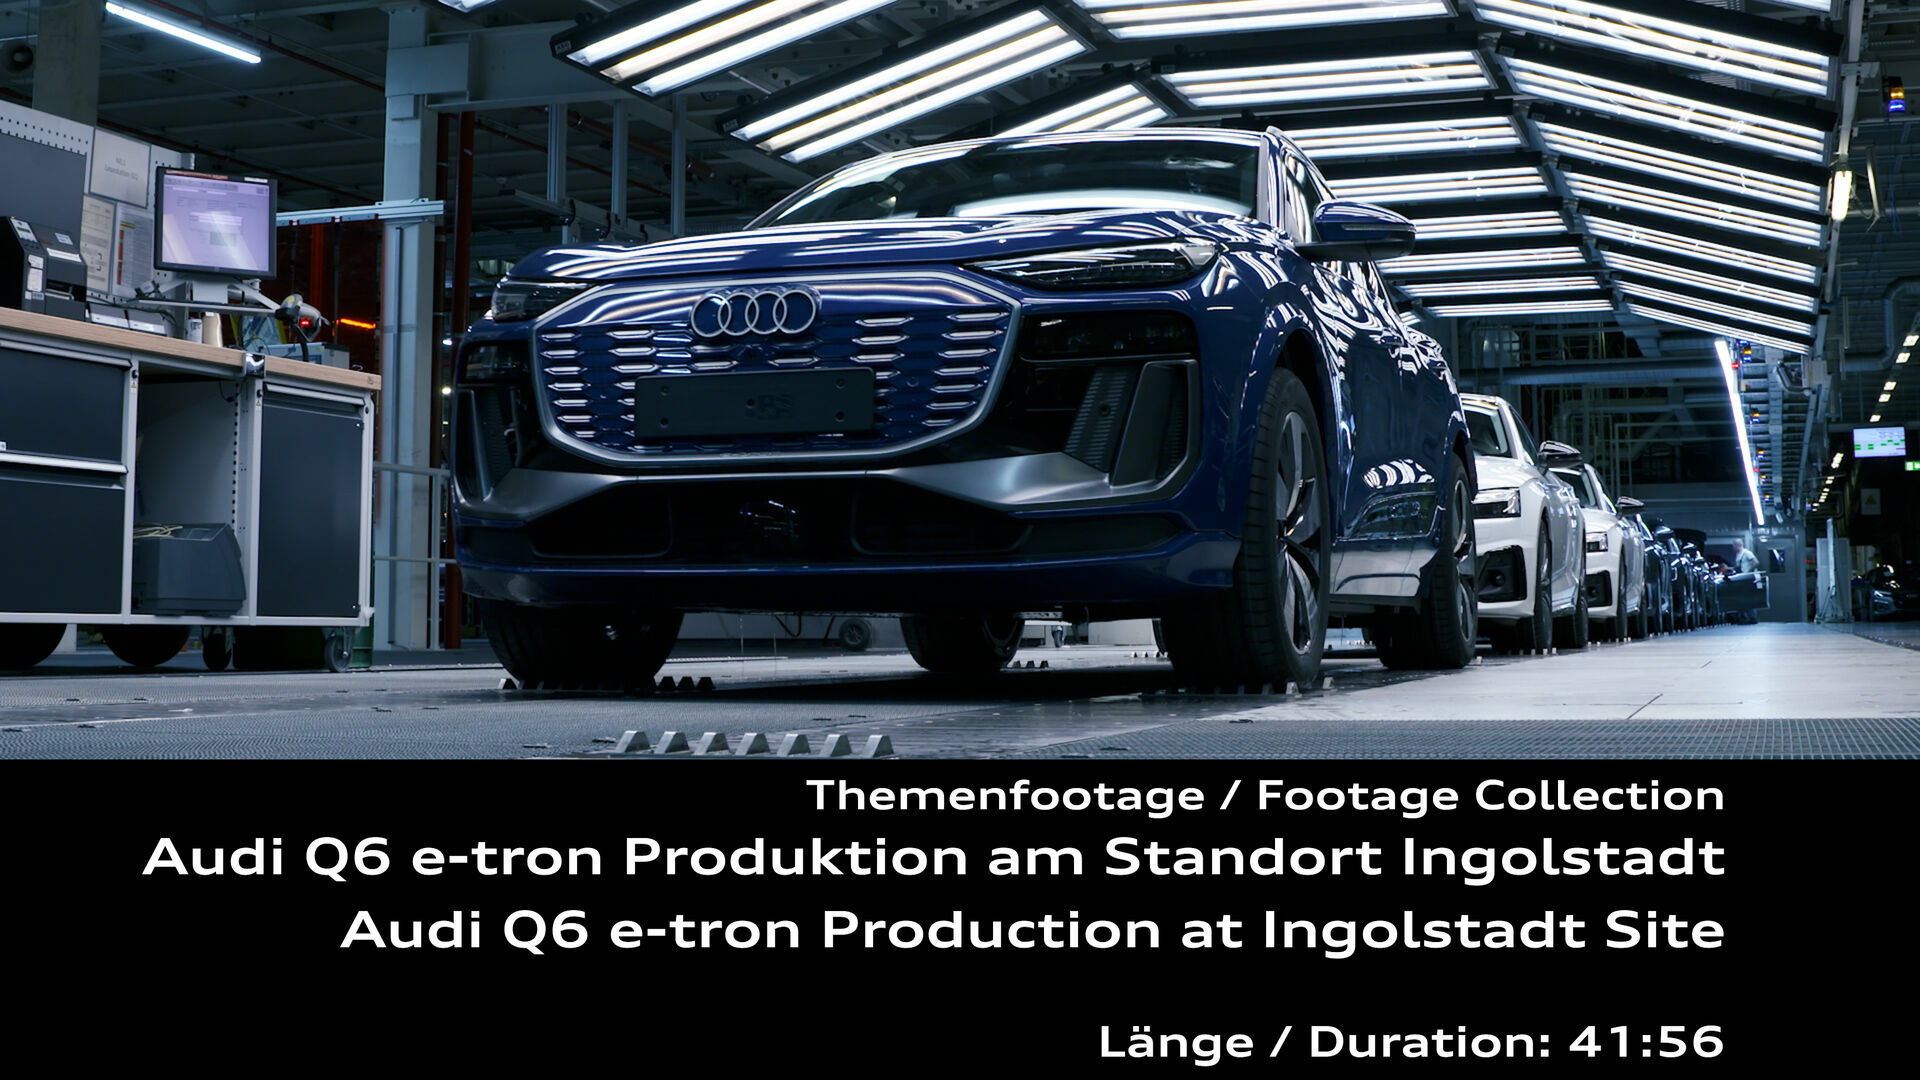 Audi Q6 e-tron Production at Ingolstadt Site – Footage